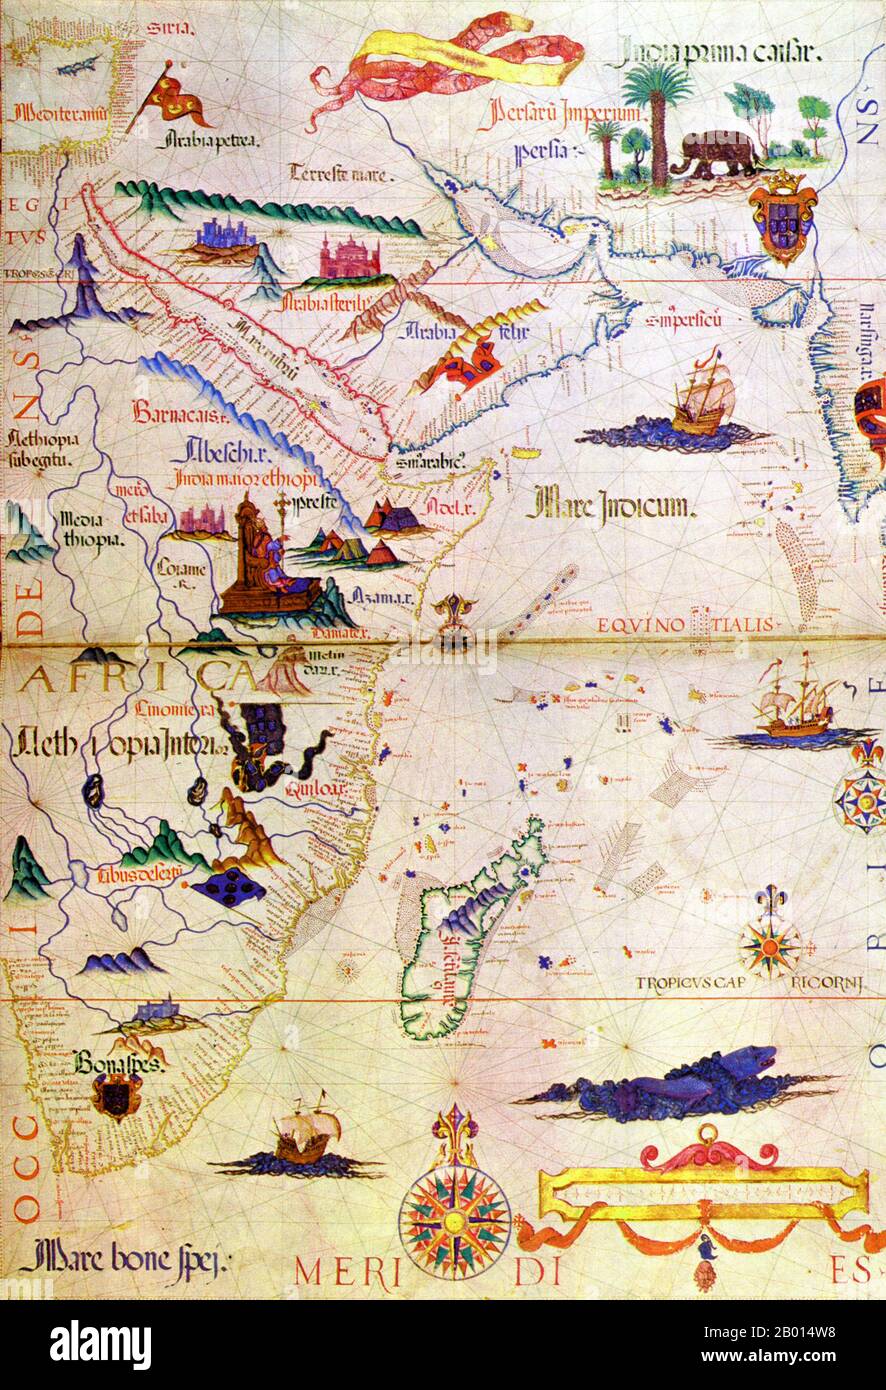 Ostafrika: Eine Karte der Ostküste Afrikas, die nach Vasco da Gamas Reise nach Indien im Jahr 1497-1498 von Diogo Homem (1521-1576), c.. 1558. Vasco da Gama (1460/1469. – 24. Dezember 1524) war ein portugiesischer Entdecker, einer der erfolgreichsten im Zeitalter der Entdeckung und Kommandant der ersten Schiffe, die direkt von Europa nach Indien segelten. Unter König Manuel I. entdeckte Portugal 1500 Brasilien. In der Zwischenzeit setzte da Gama am 8. Juli 1497 von Lissabon aus mit einer Flotte von vier Schiffen und 170 Mann in See. Er segelte um das Kap der Guten Hoffnung, bevor er schließlich am 20. Mai 1498 in Indien landete. Stockfoto